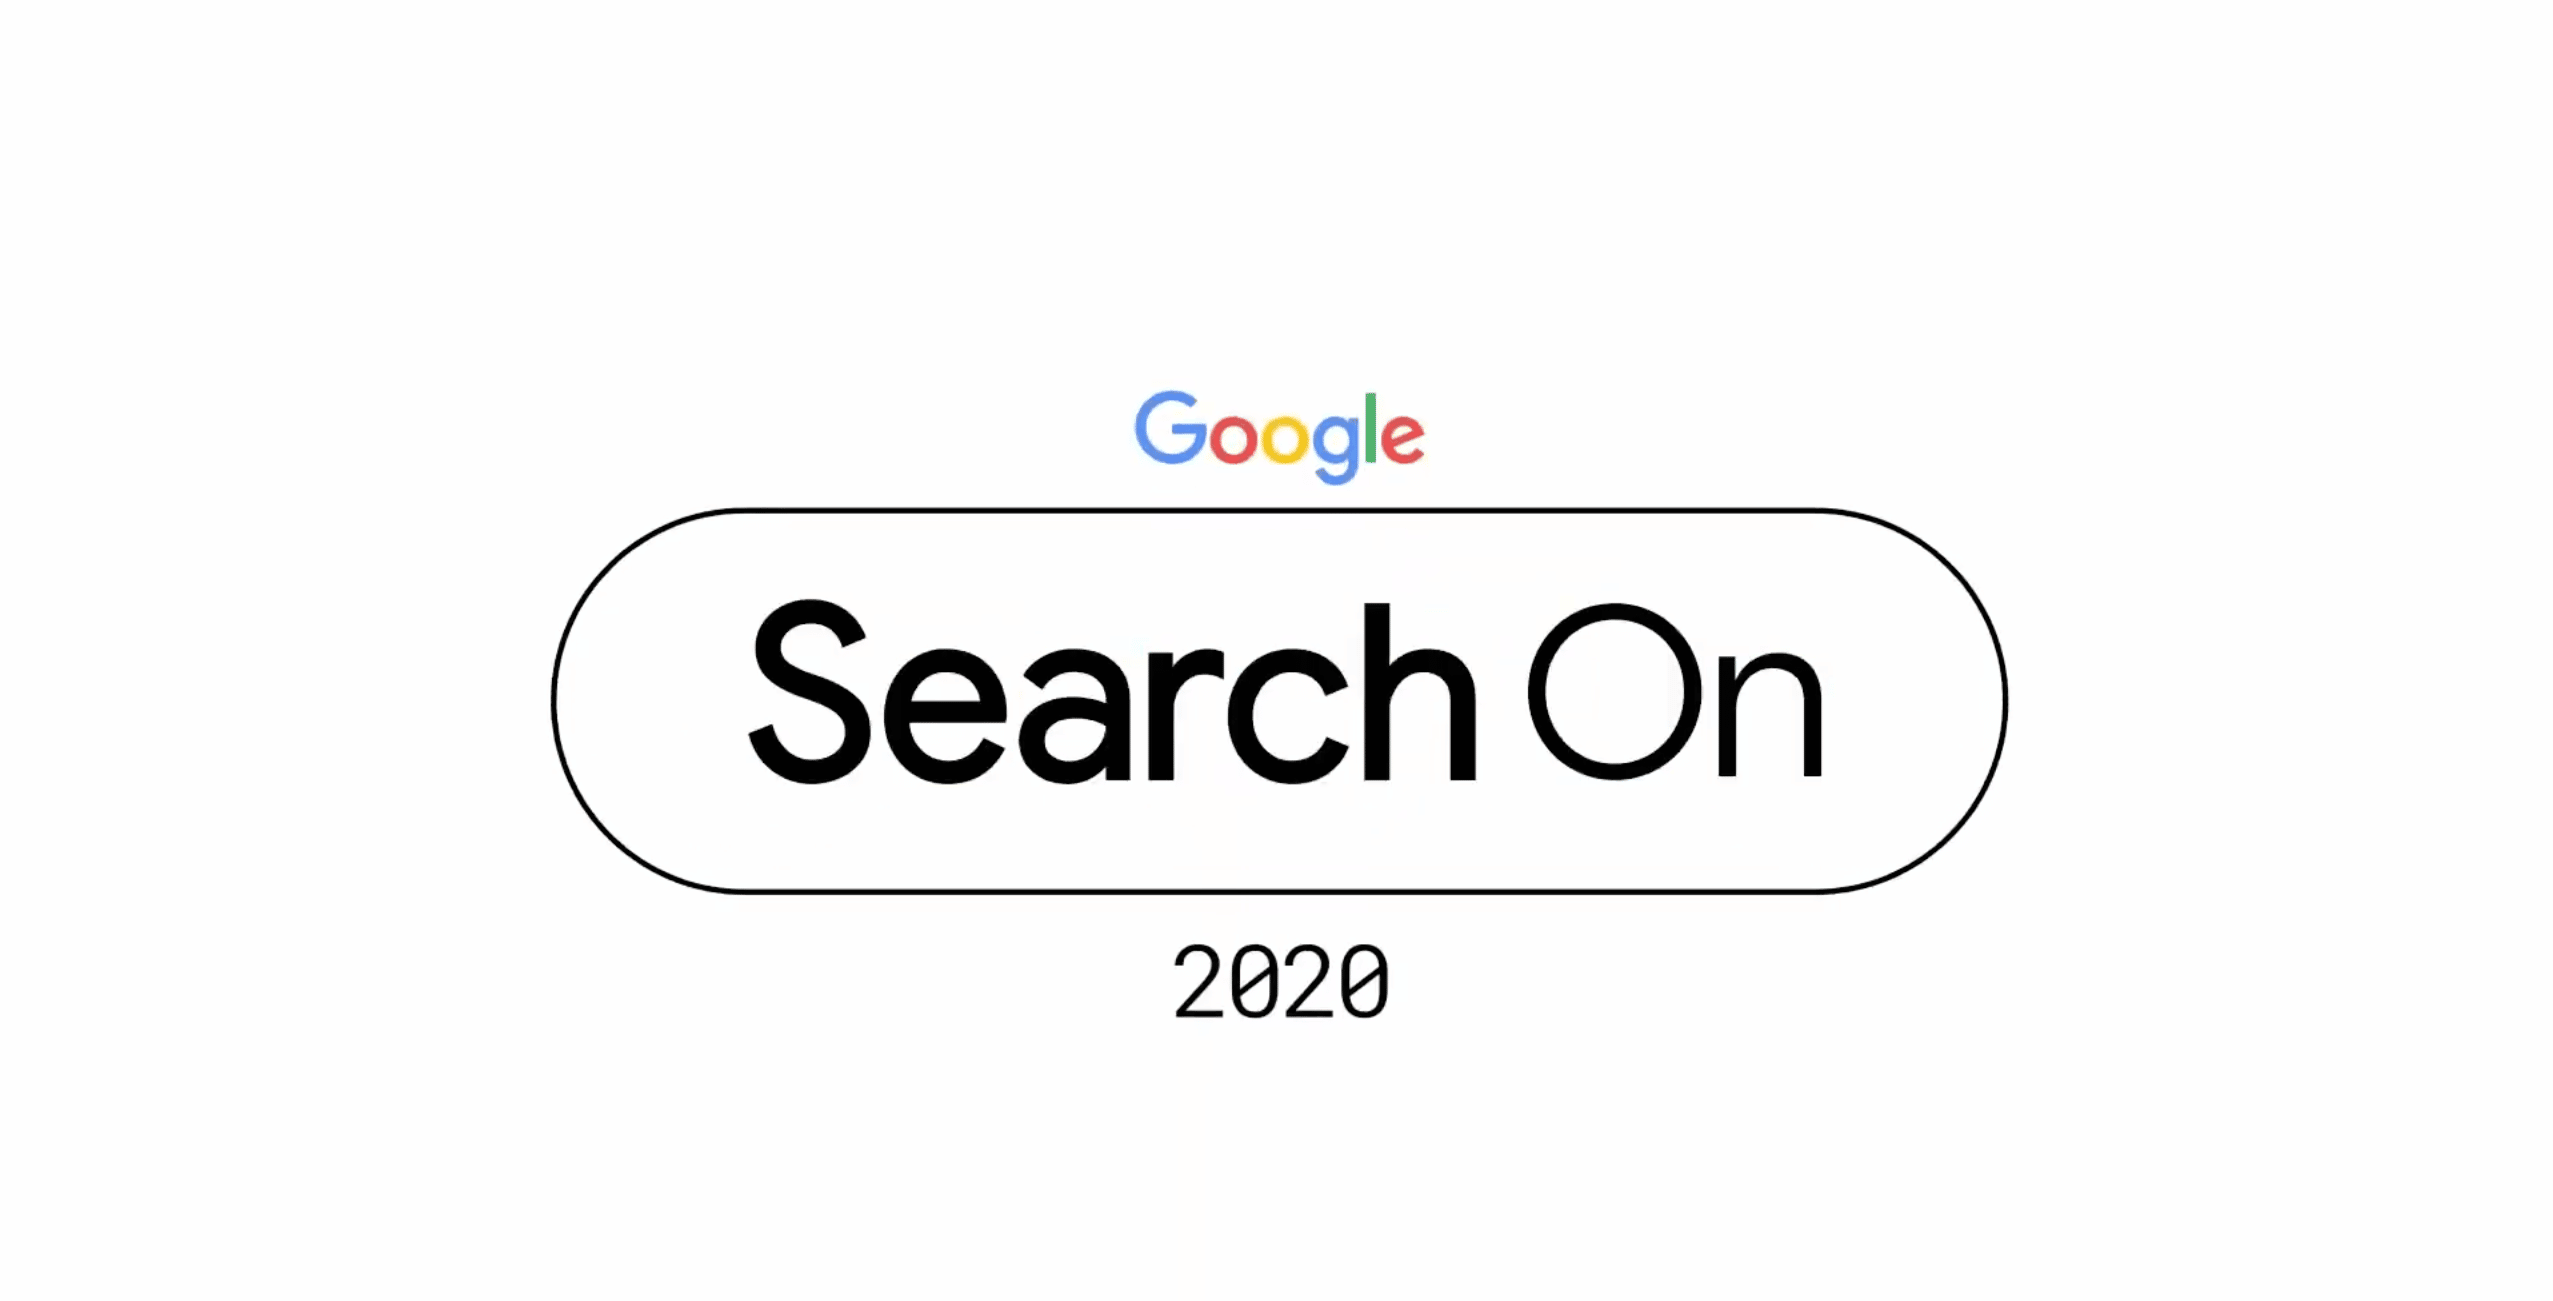 Illustration créée pour la conférence Google Search On 2020